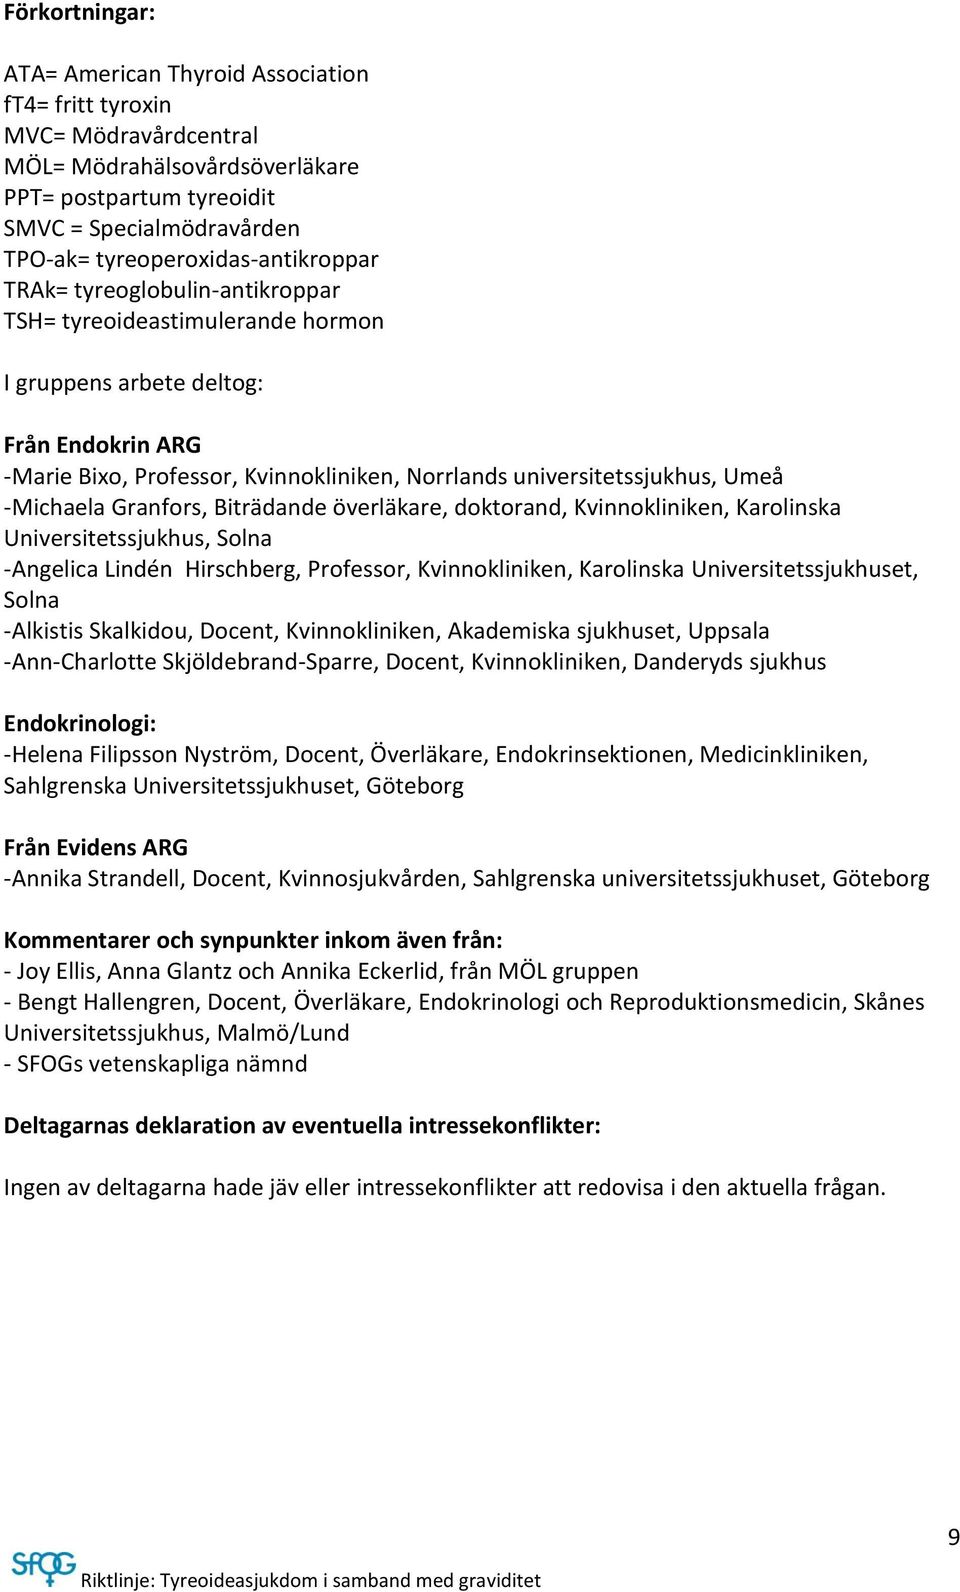 universitetssjukhus, Umeå -Michaela Granfors, Biträdande överläkare, doktorand, Kvinnokliniken, Karolinska Universitetssjukhus, Solna -Angelica Lindén Hirschberg, Professor, Kvinnokliniken,